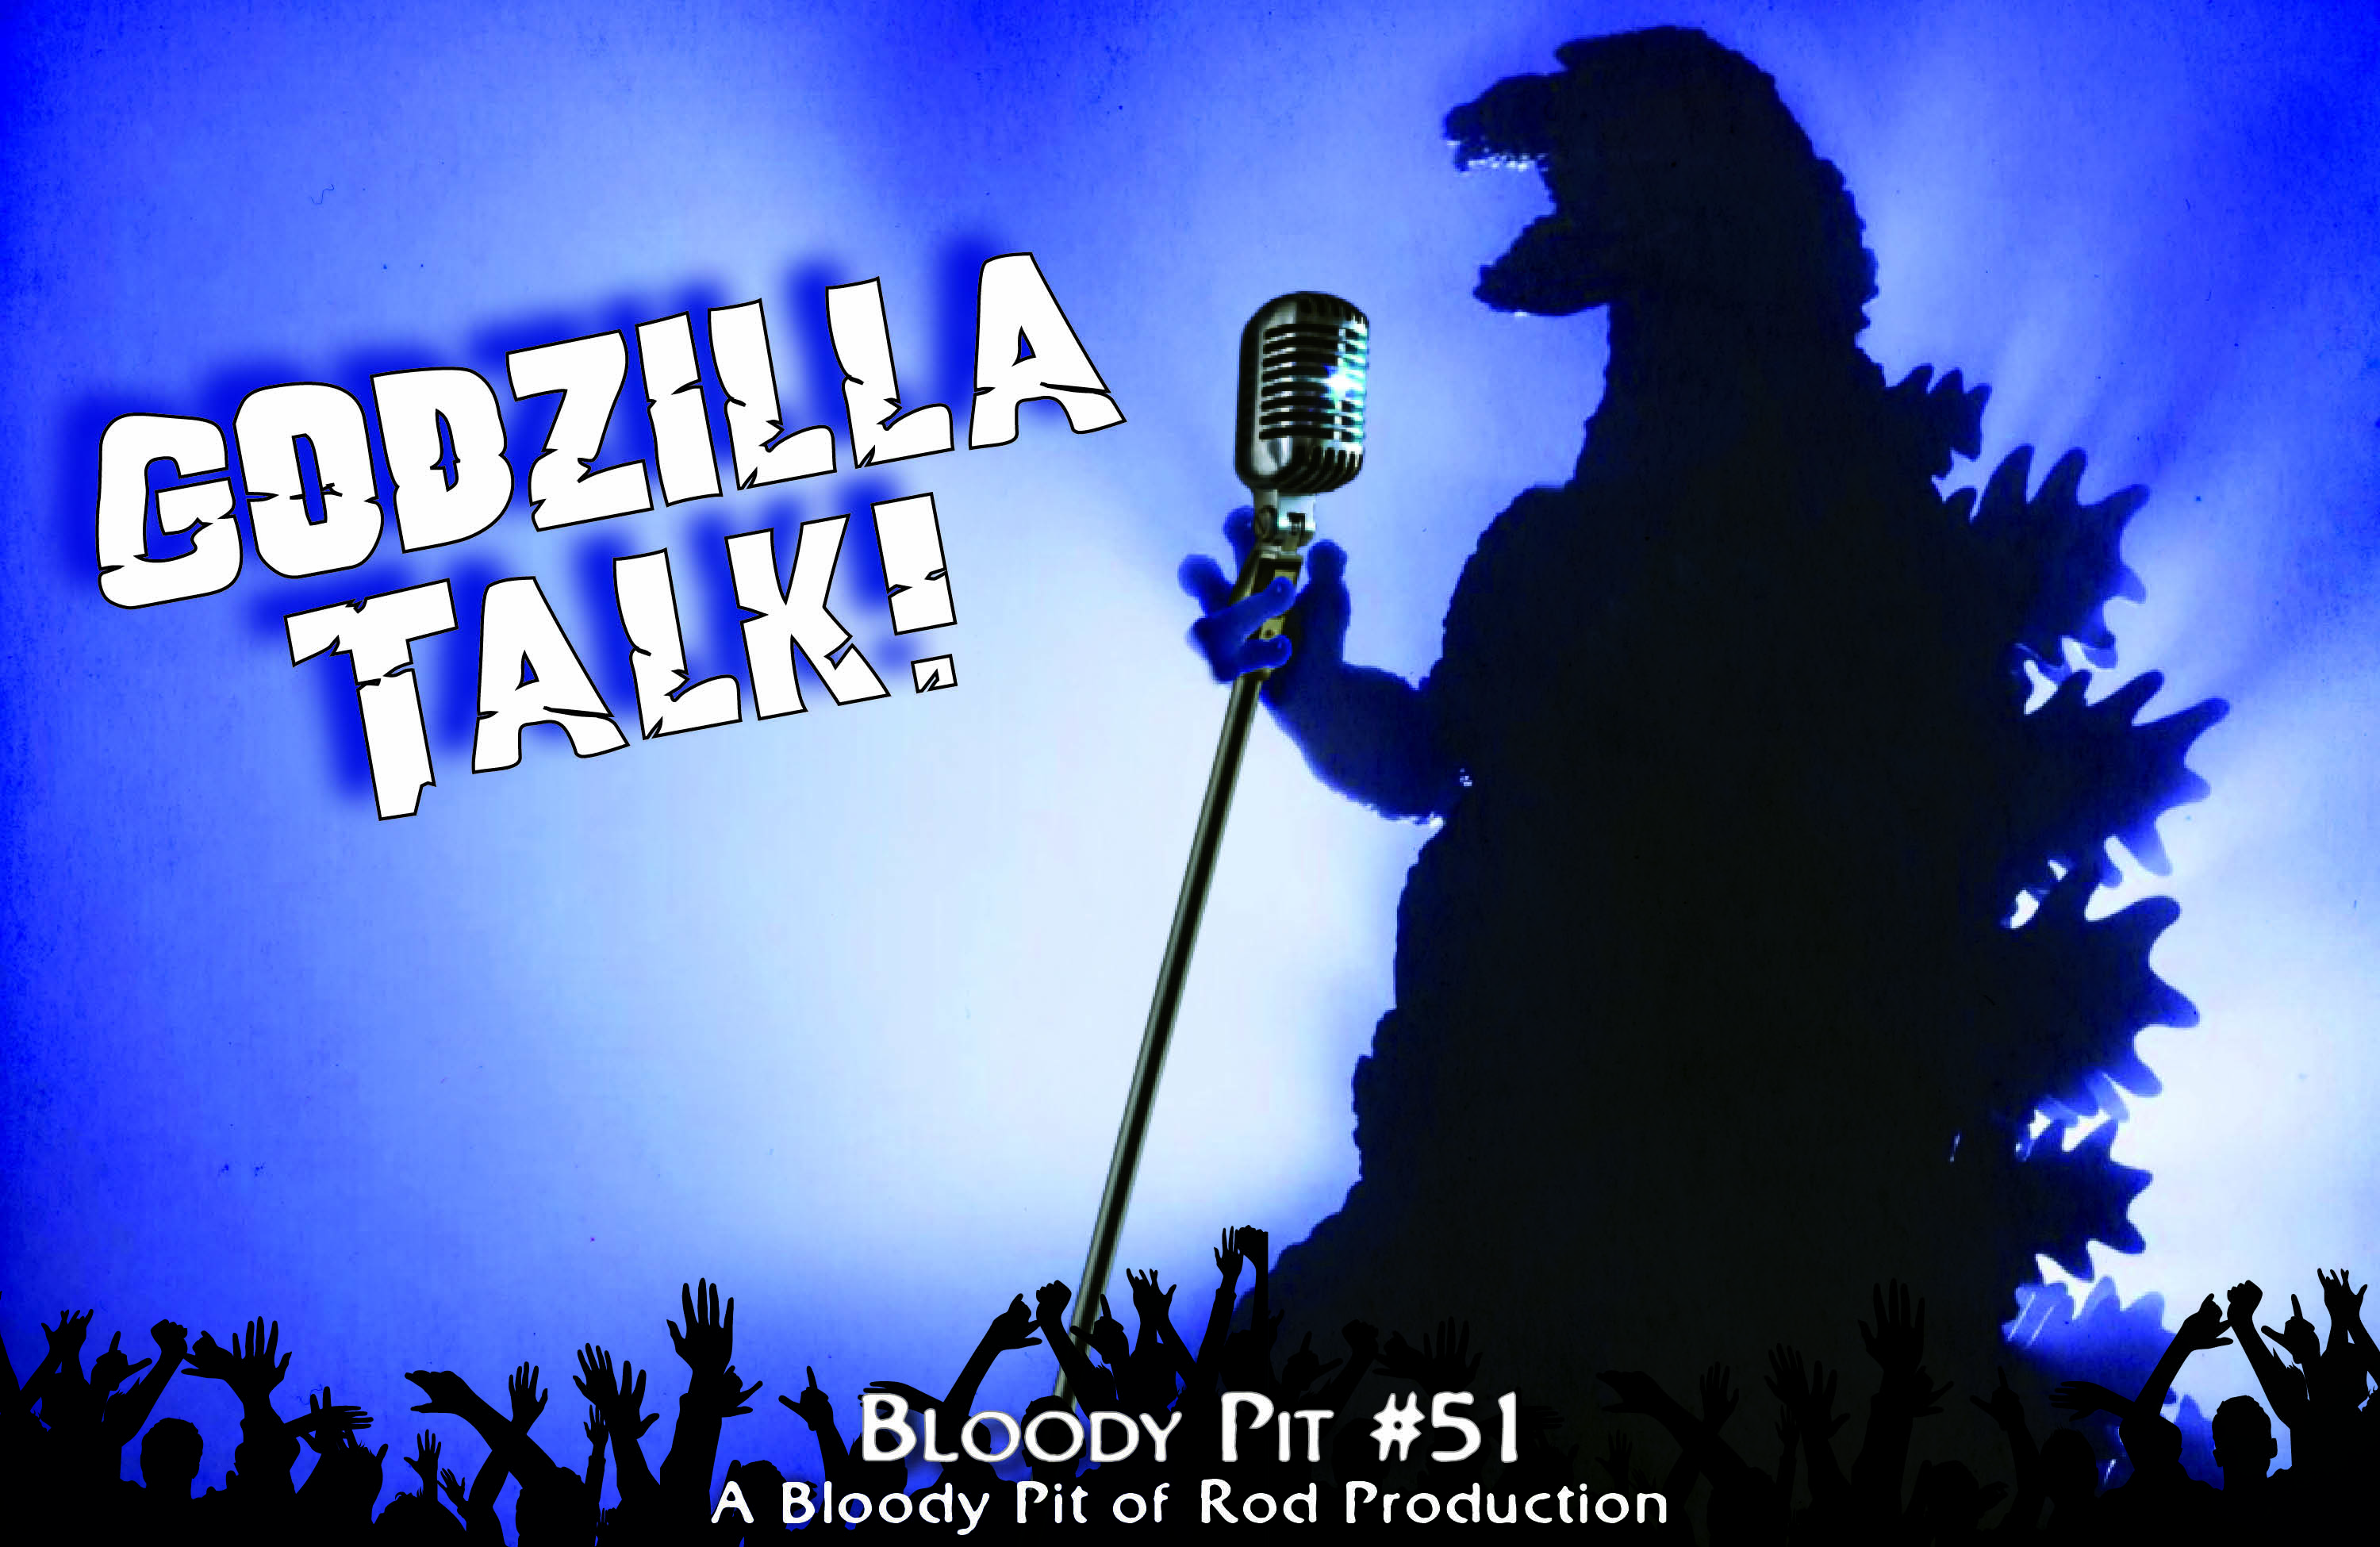 The Bloody Pit #51 - Godzilla Talk! 